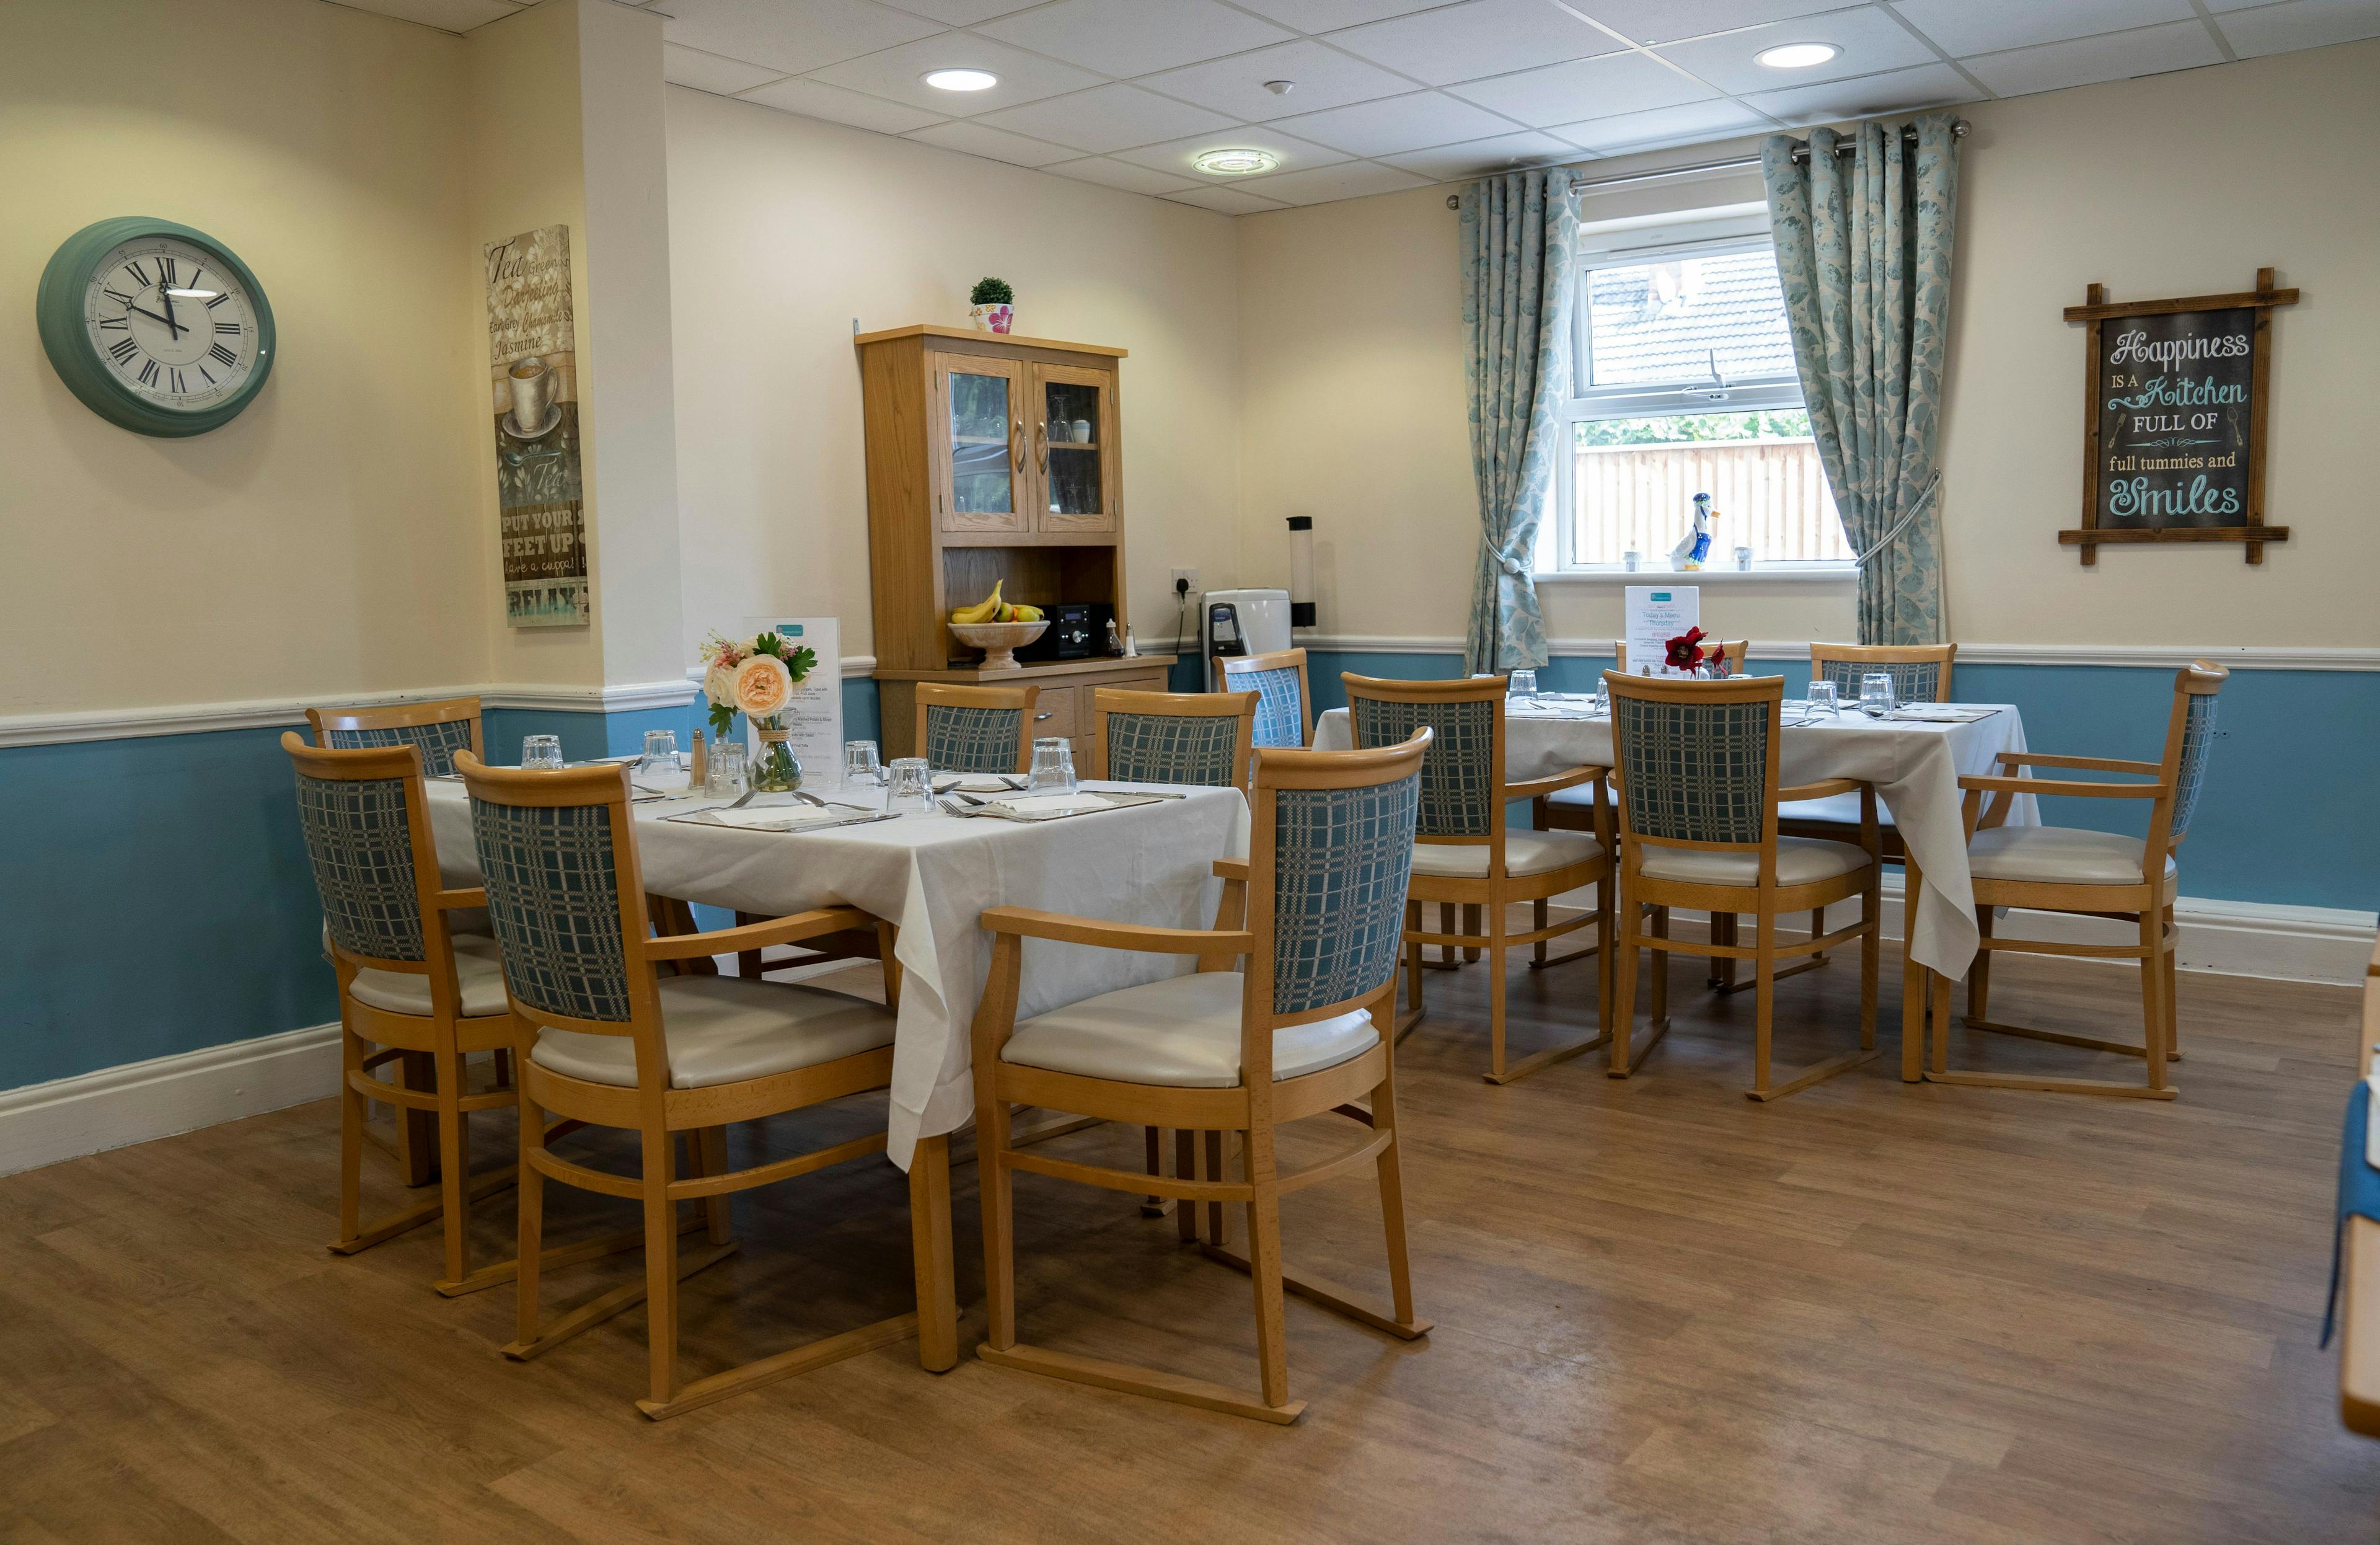 Dining Area at Ravenhurst Residential, Stourport-on-Severn